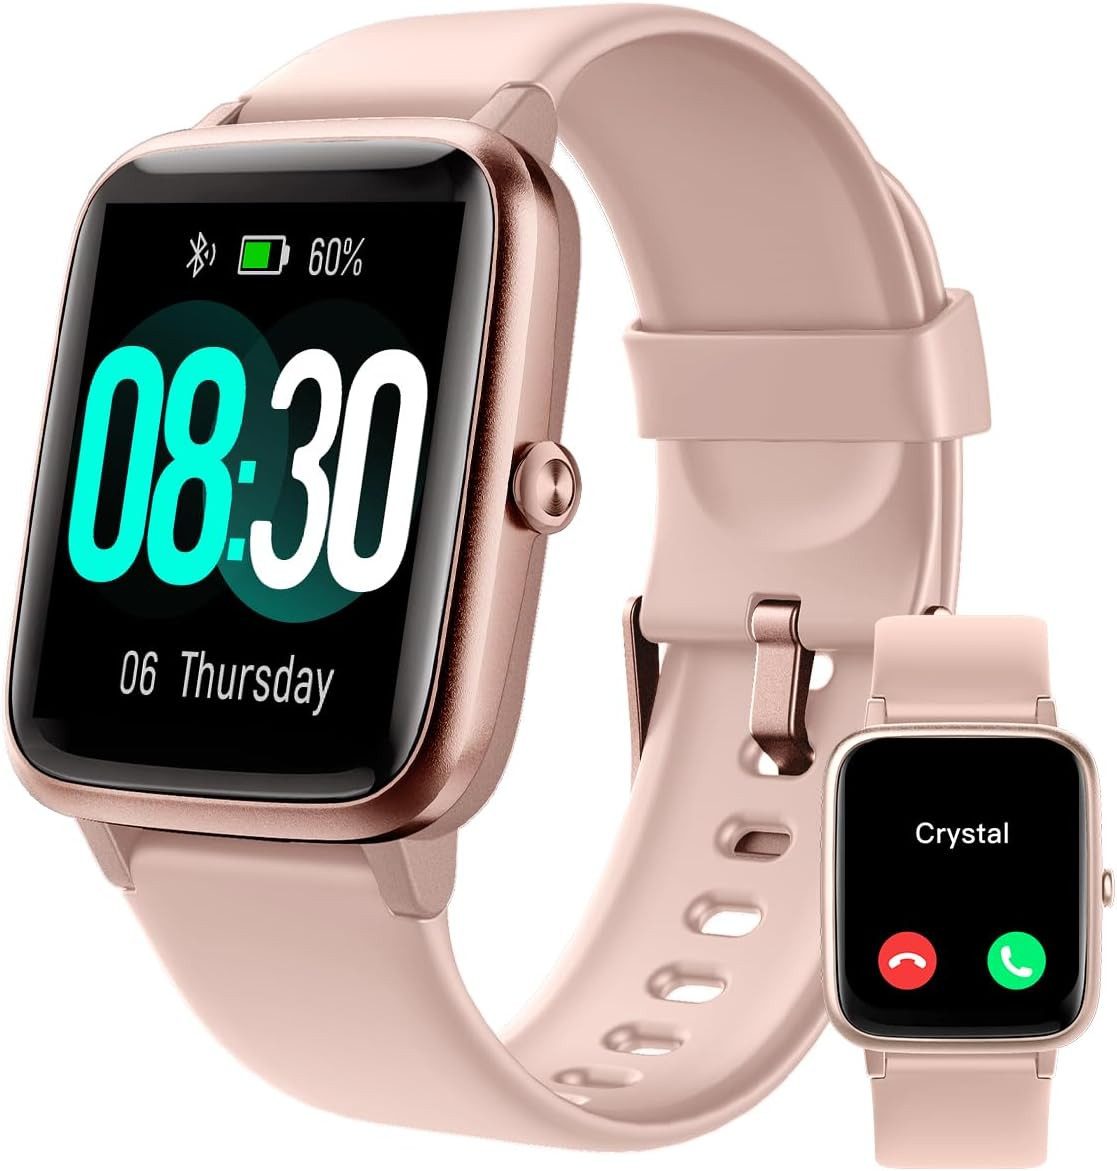 GRV Damen's und Herren's Telefonfunktion Fitness-Tracker Smartwatch (Android/iOS), mit Herzfrequenzmessung,SpO2,Schrittzähler,Schlafmonitor